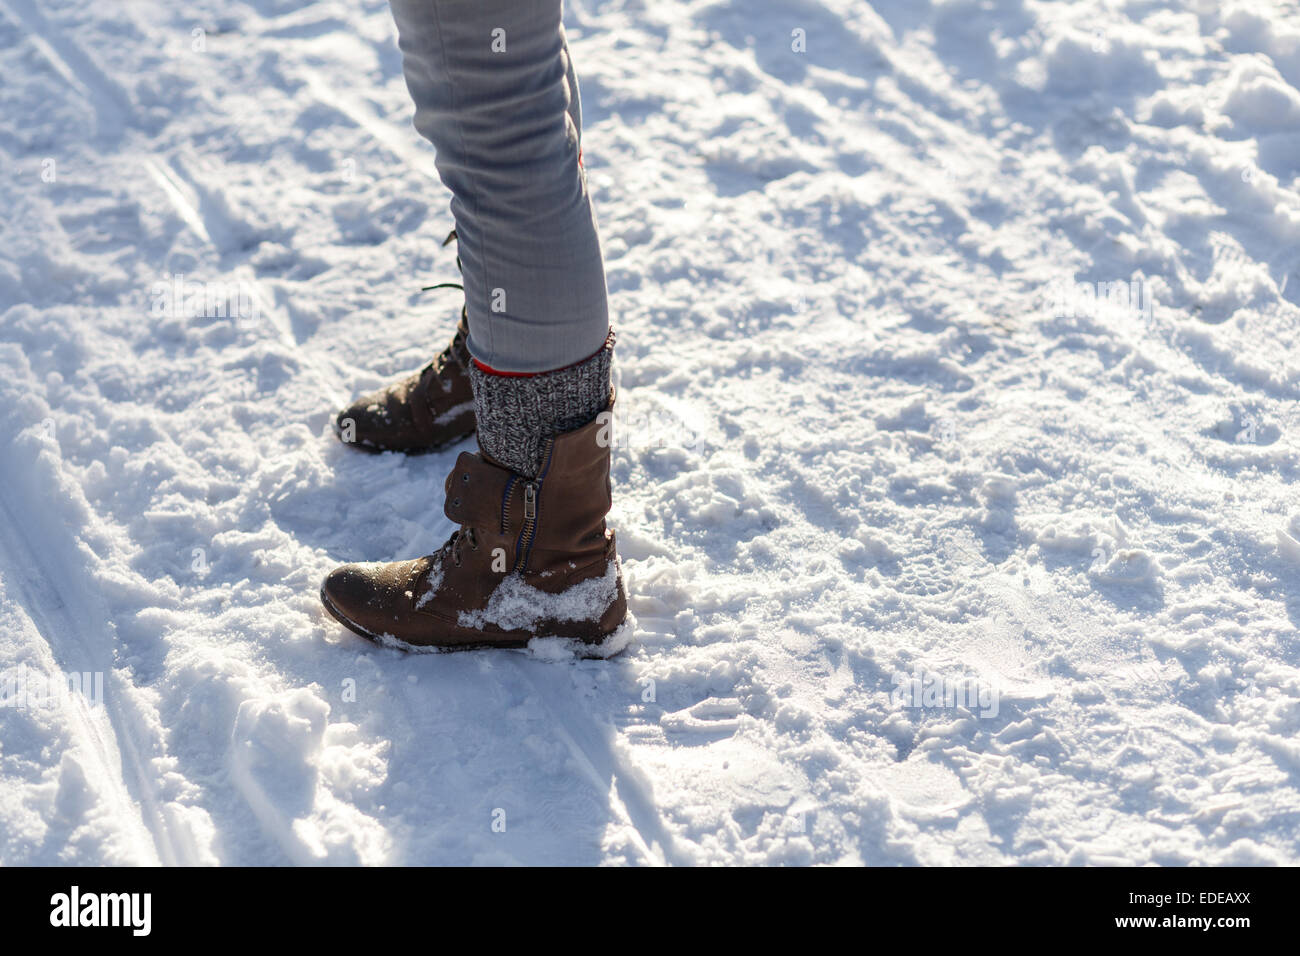 Las piernas de chica delgada en botas de luz en la nieve del invierno. Foto de stock